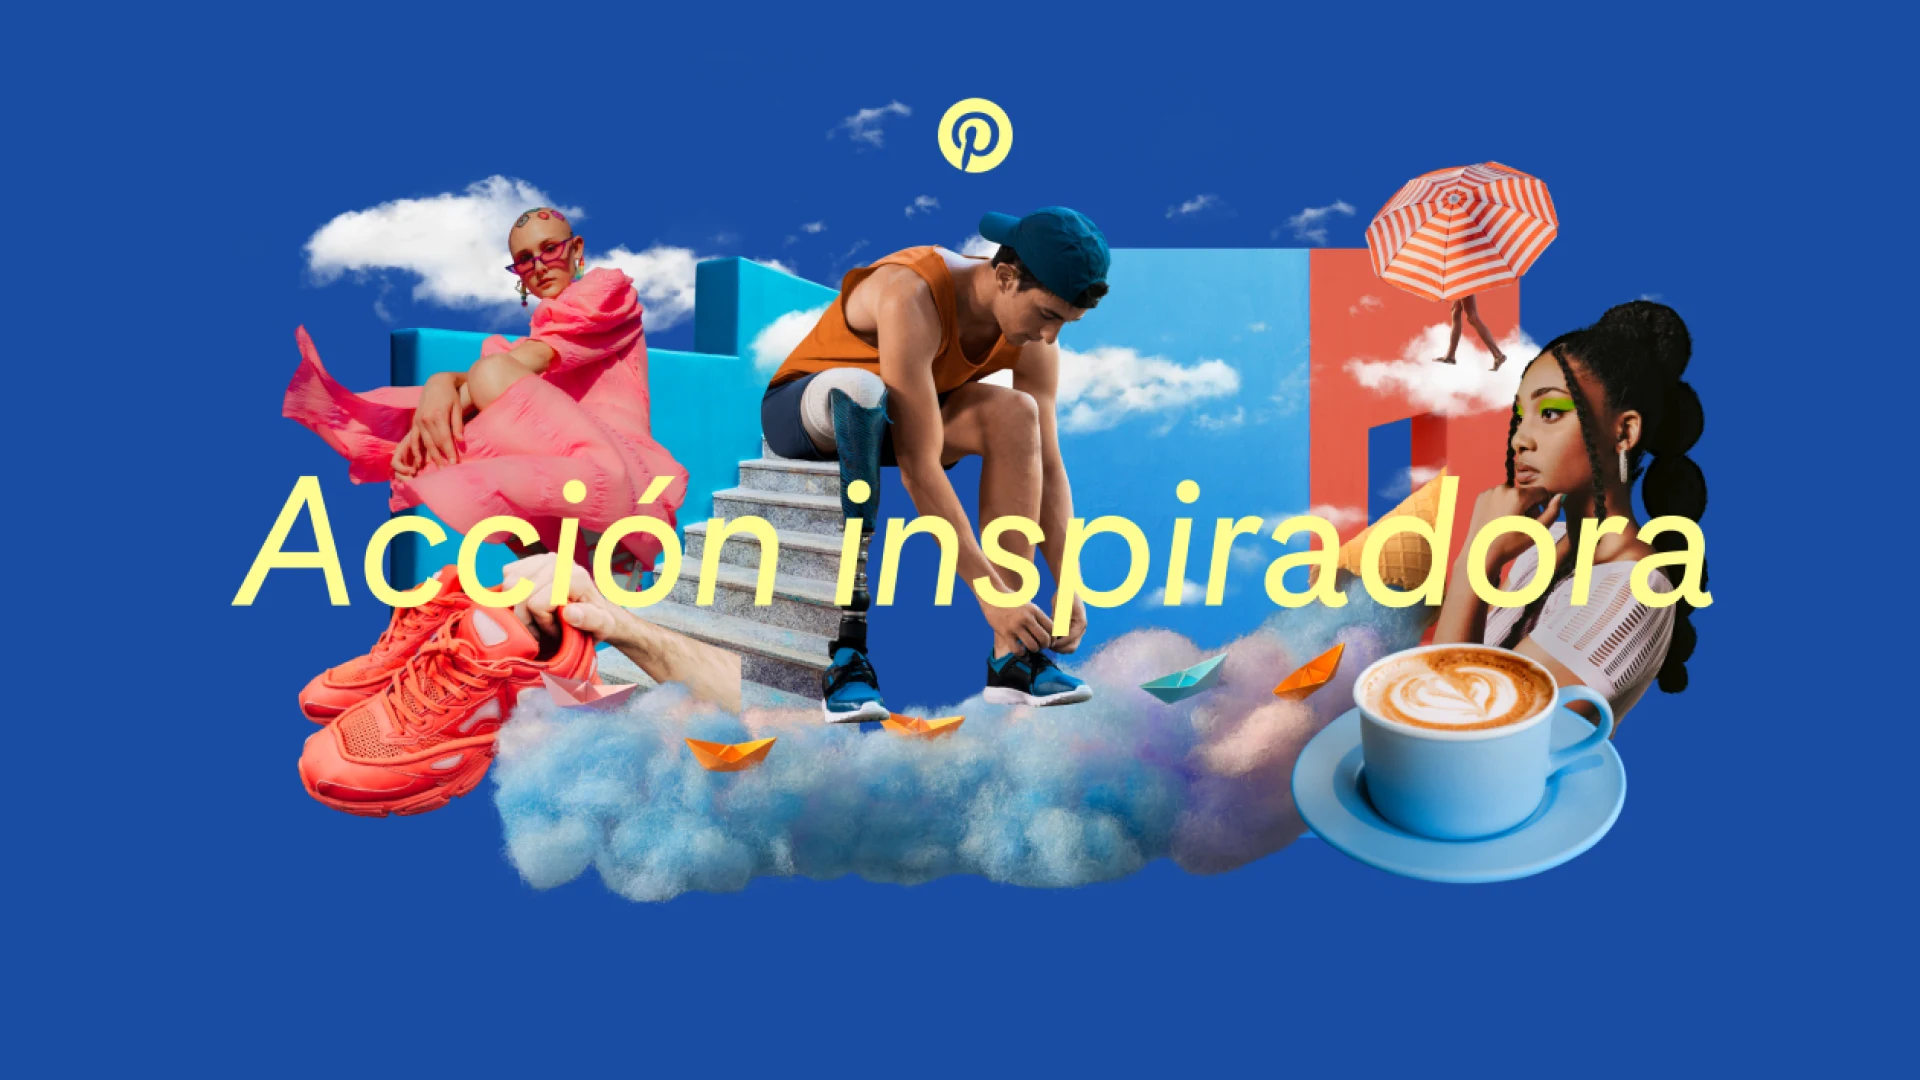 Las palabras "Acción inspiradora" aparecen sobre un collage de imágenes que representa tendencias de moda, belleza, comida y estilo de vida inspiradas en Pinterest